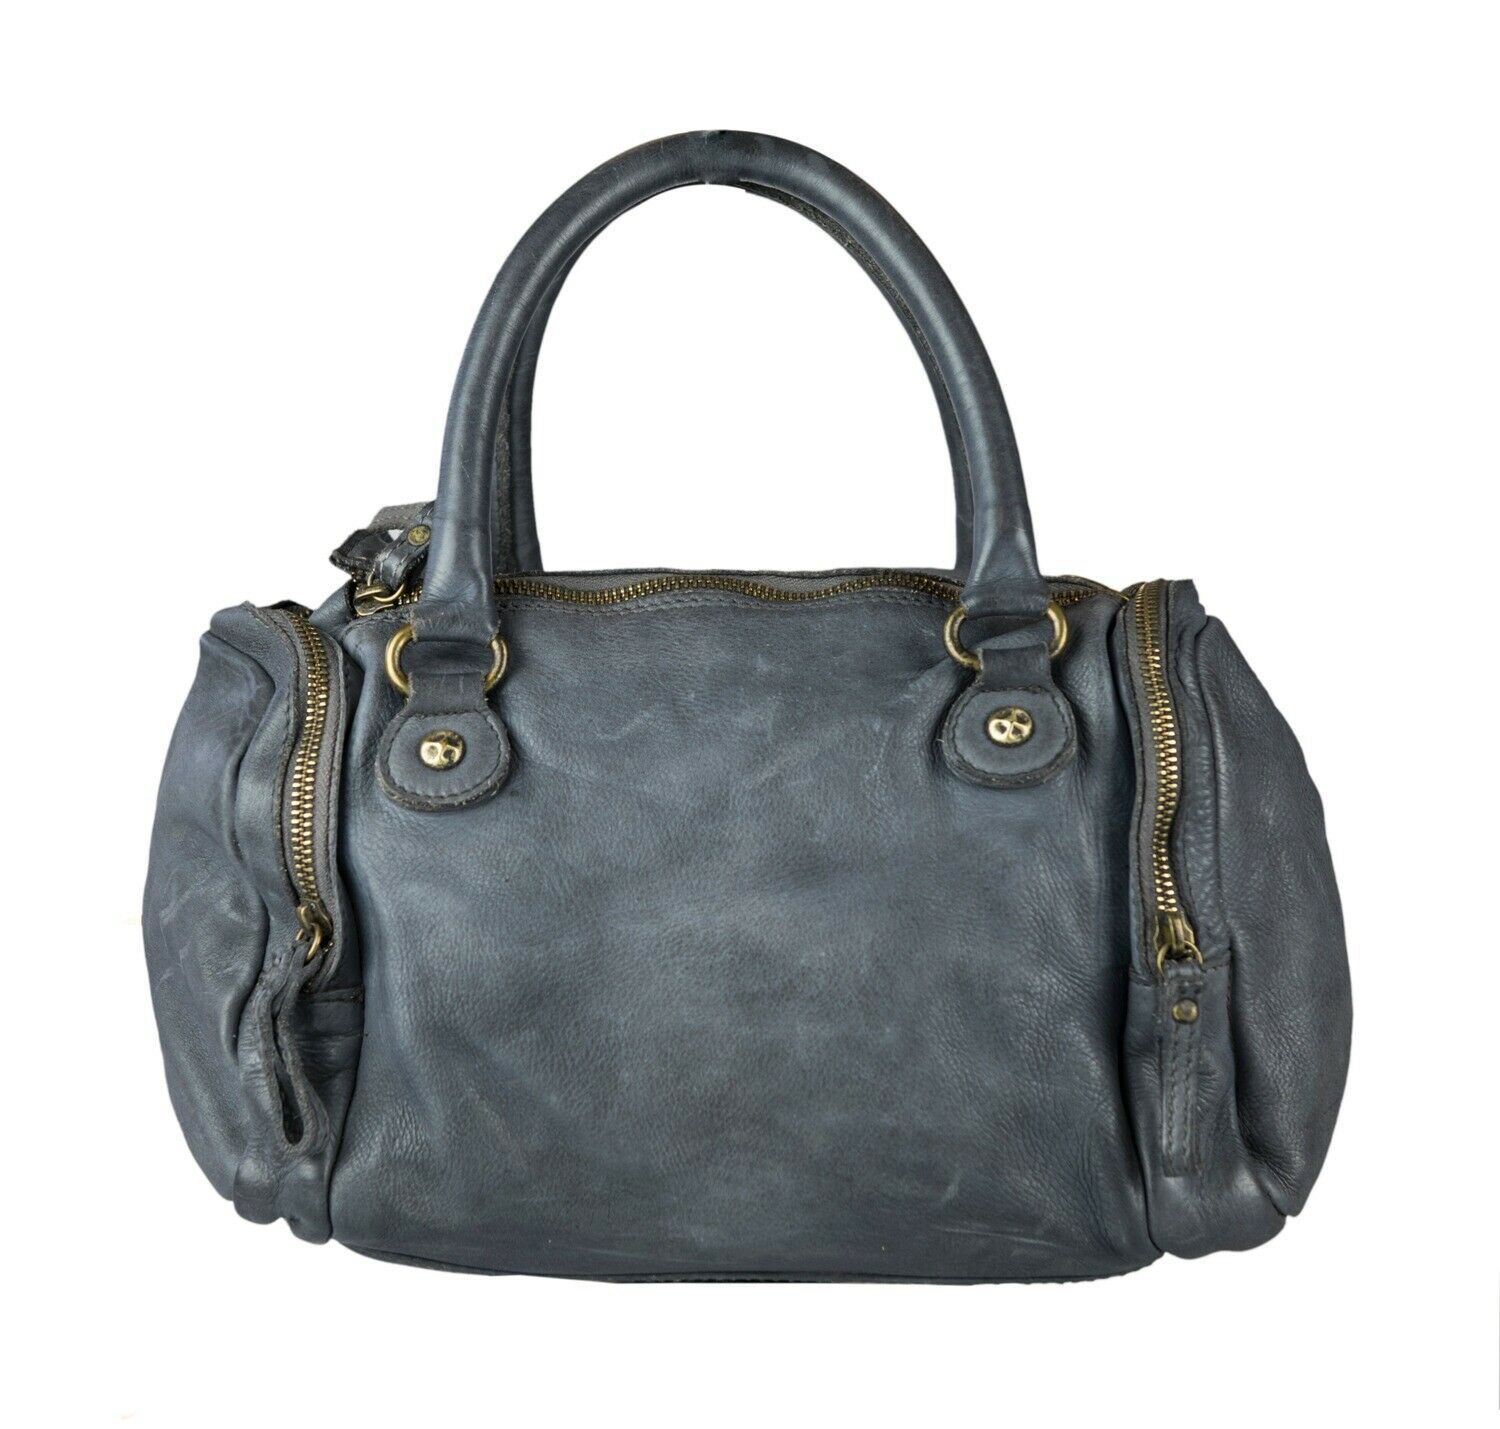 BZNA Bag Alisa Grau Italy Designer Messenger Damen Handtasche Schultertasche